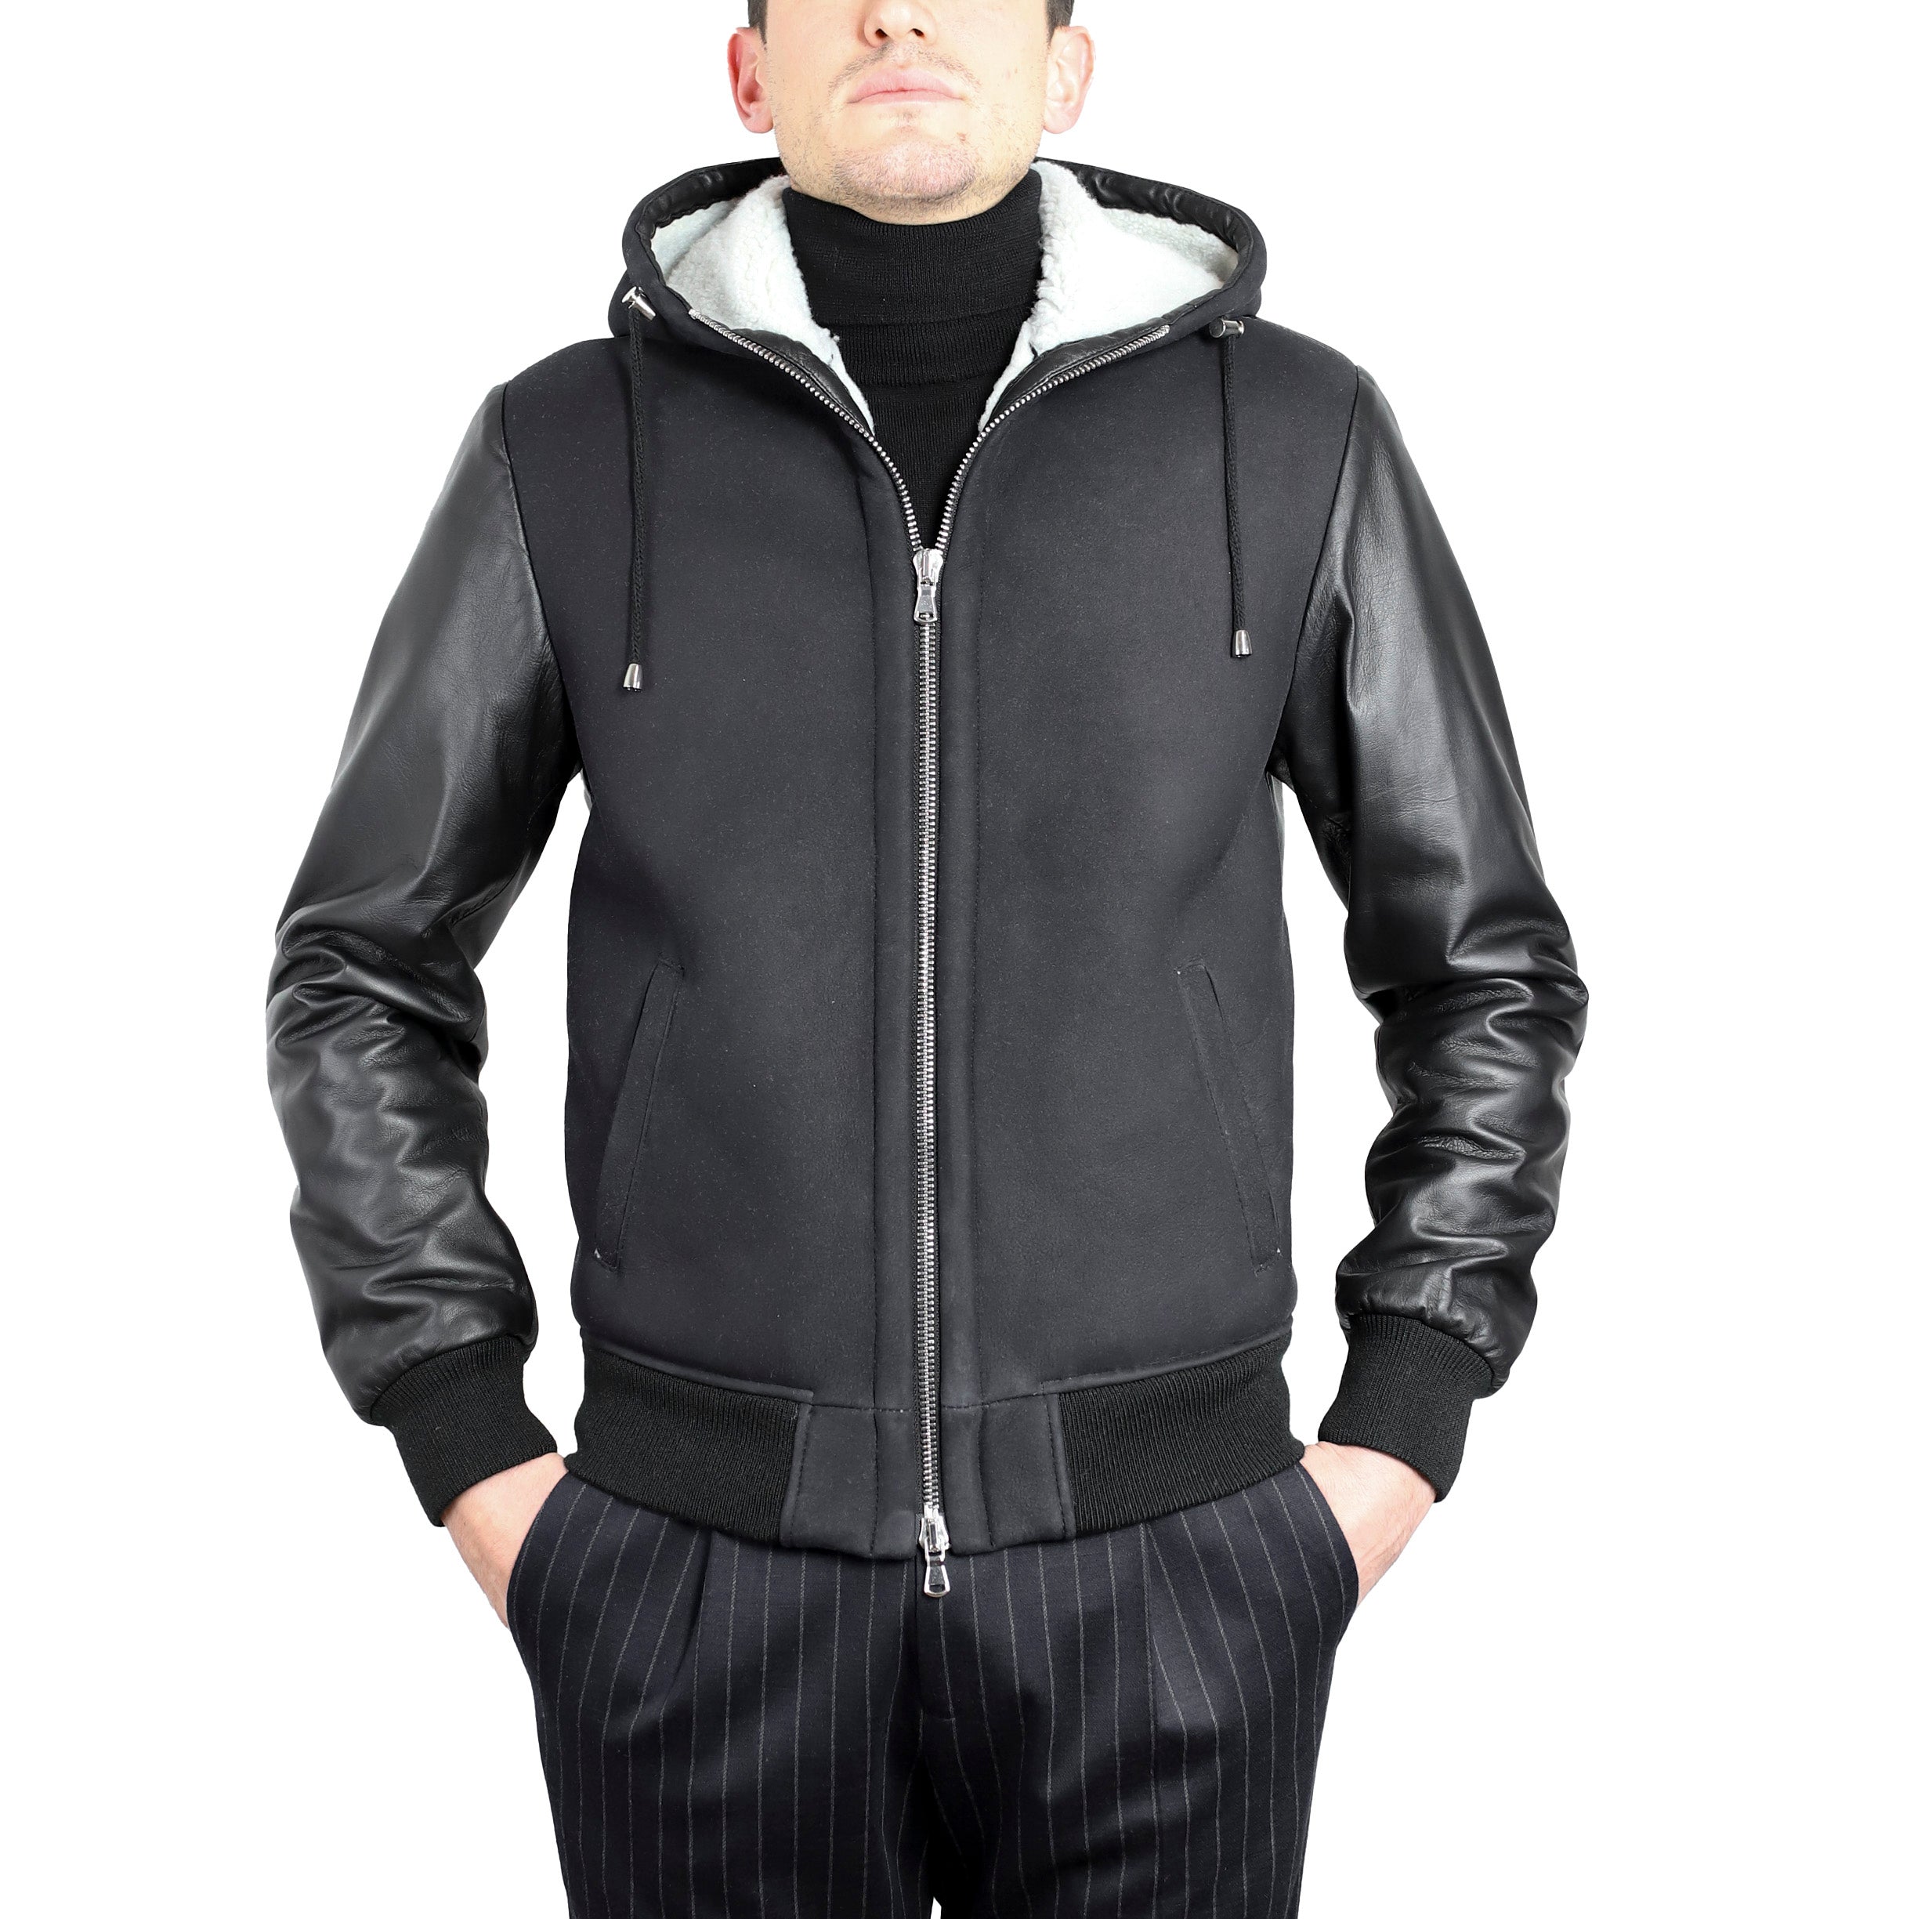 89CNSHN leather jacket